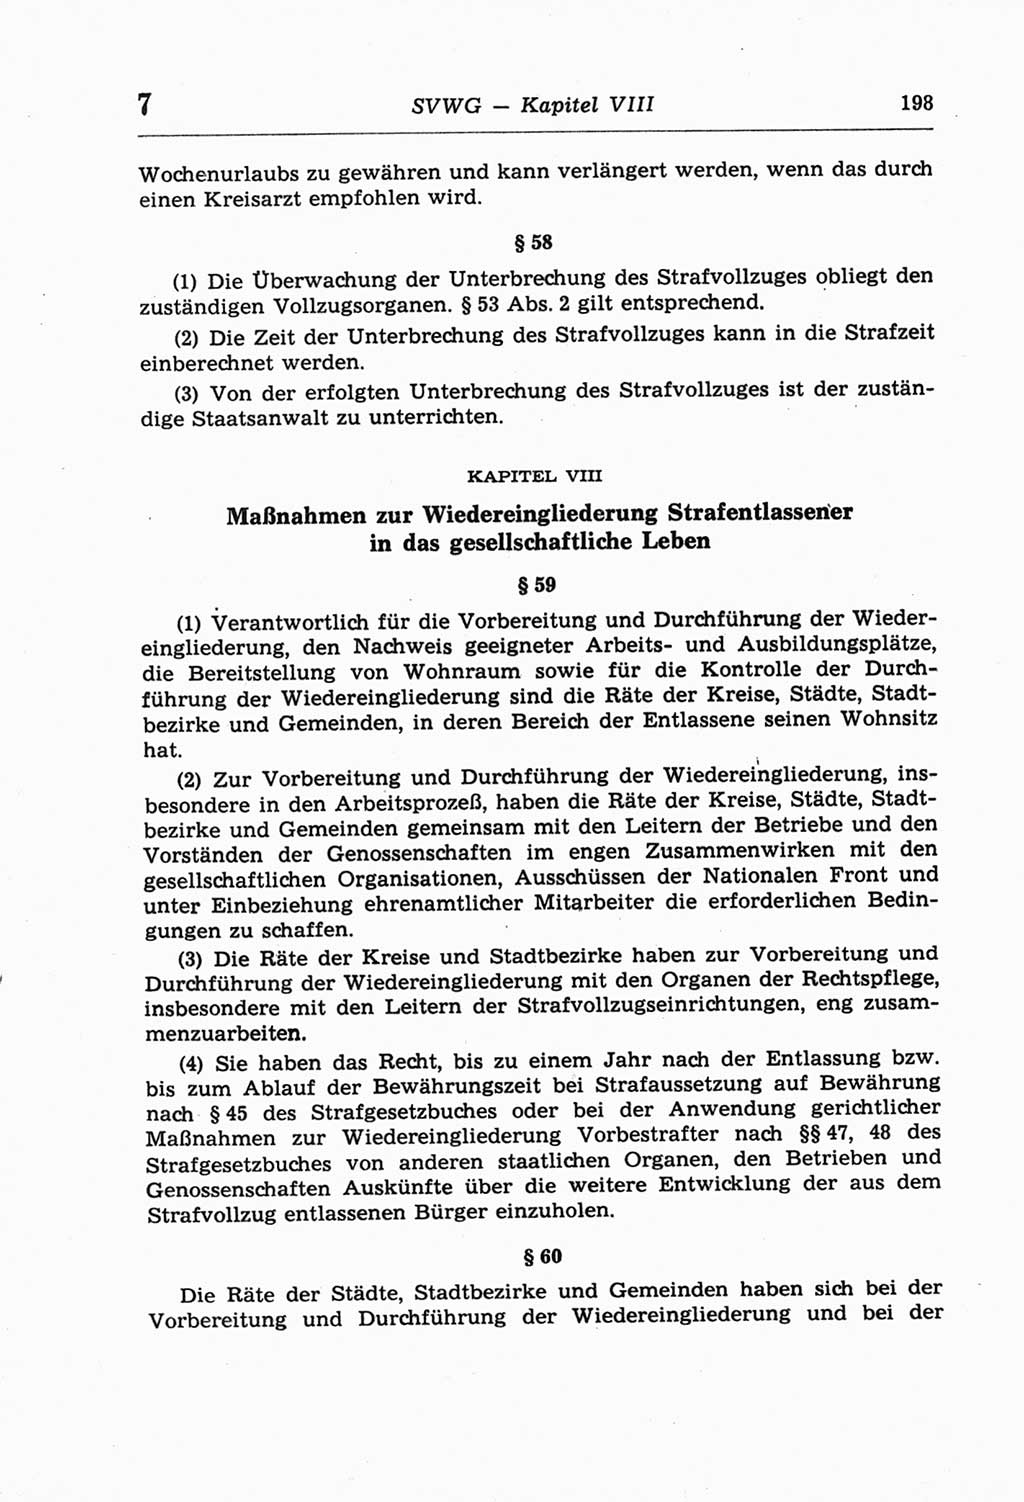 Strafprozeßordnung (StPO) der Deutschen Demokratischen Republik (DDR) und angrenzende Gesetze und Bestimmungen 1968, Seite 198 (StPO Ges. Bstgn. DDR 1968, S. 198)